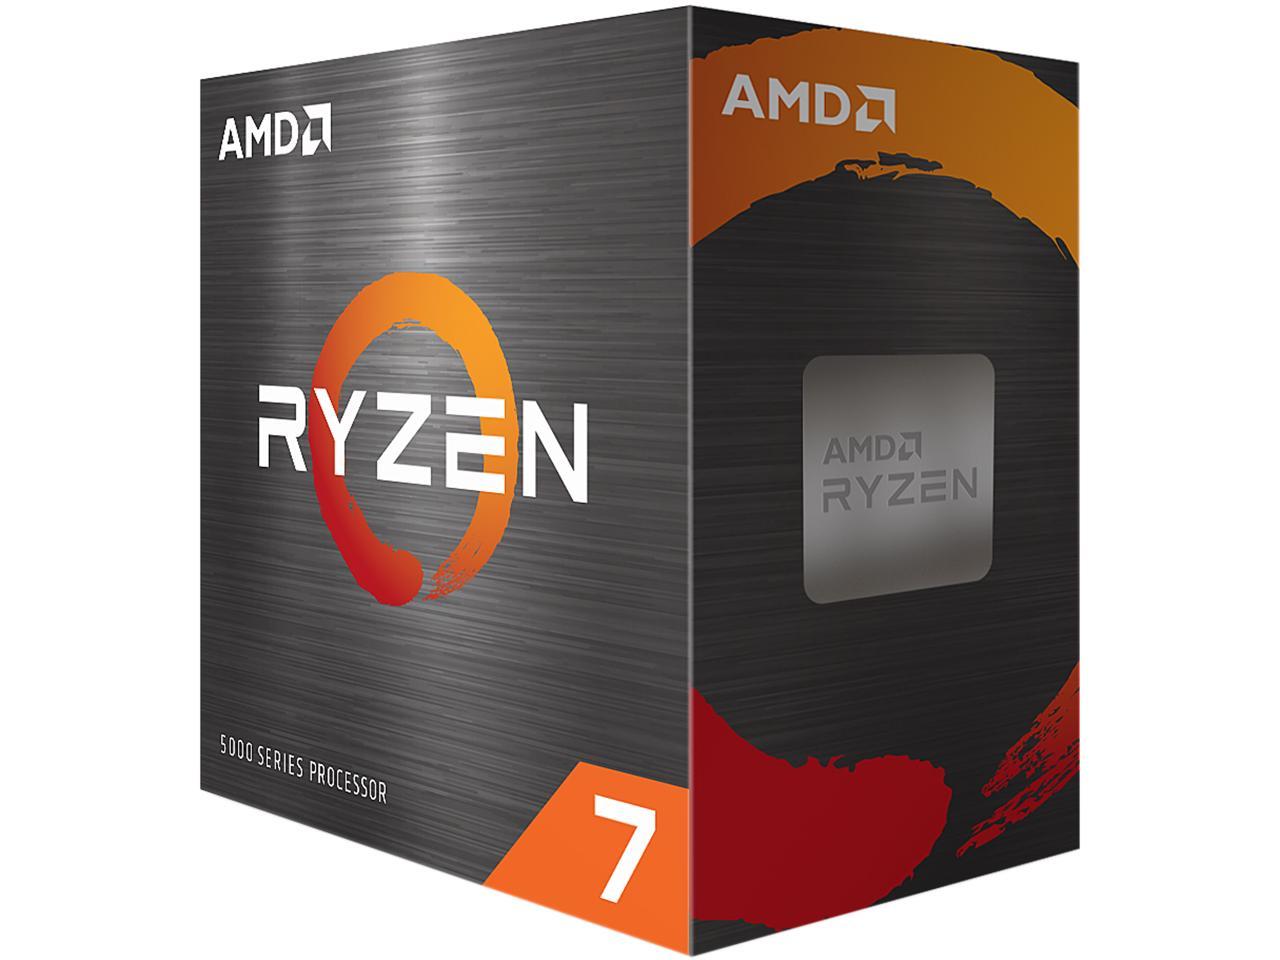 AMD Ryzen 7 5800X 3.8 GHz 8-Core Socket AM4 CPU - $198.99 + Free Shipping